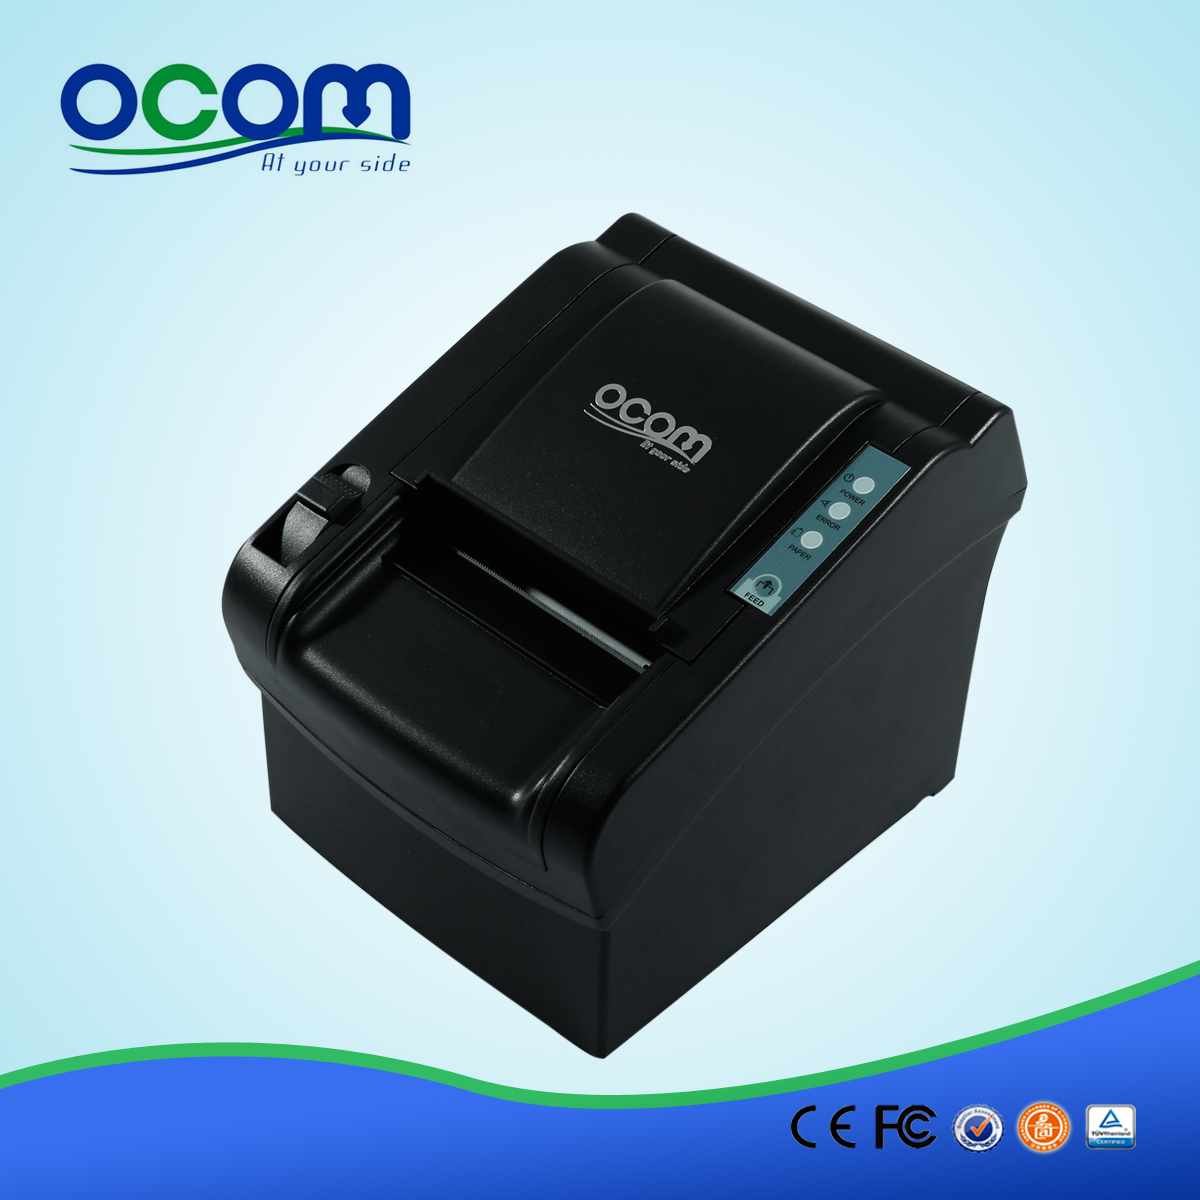 OCPP-802 80mm وتأثير الطابعات الحرارية لنظام نقاط البيع